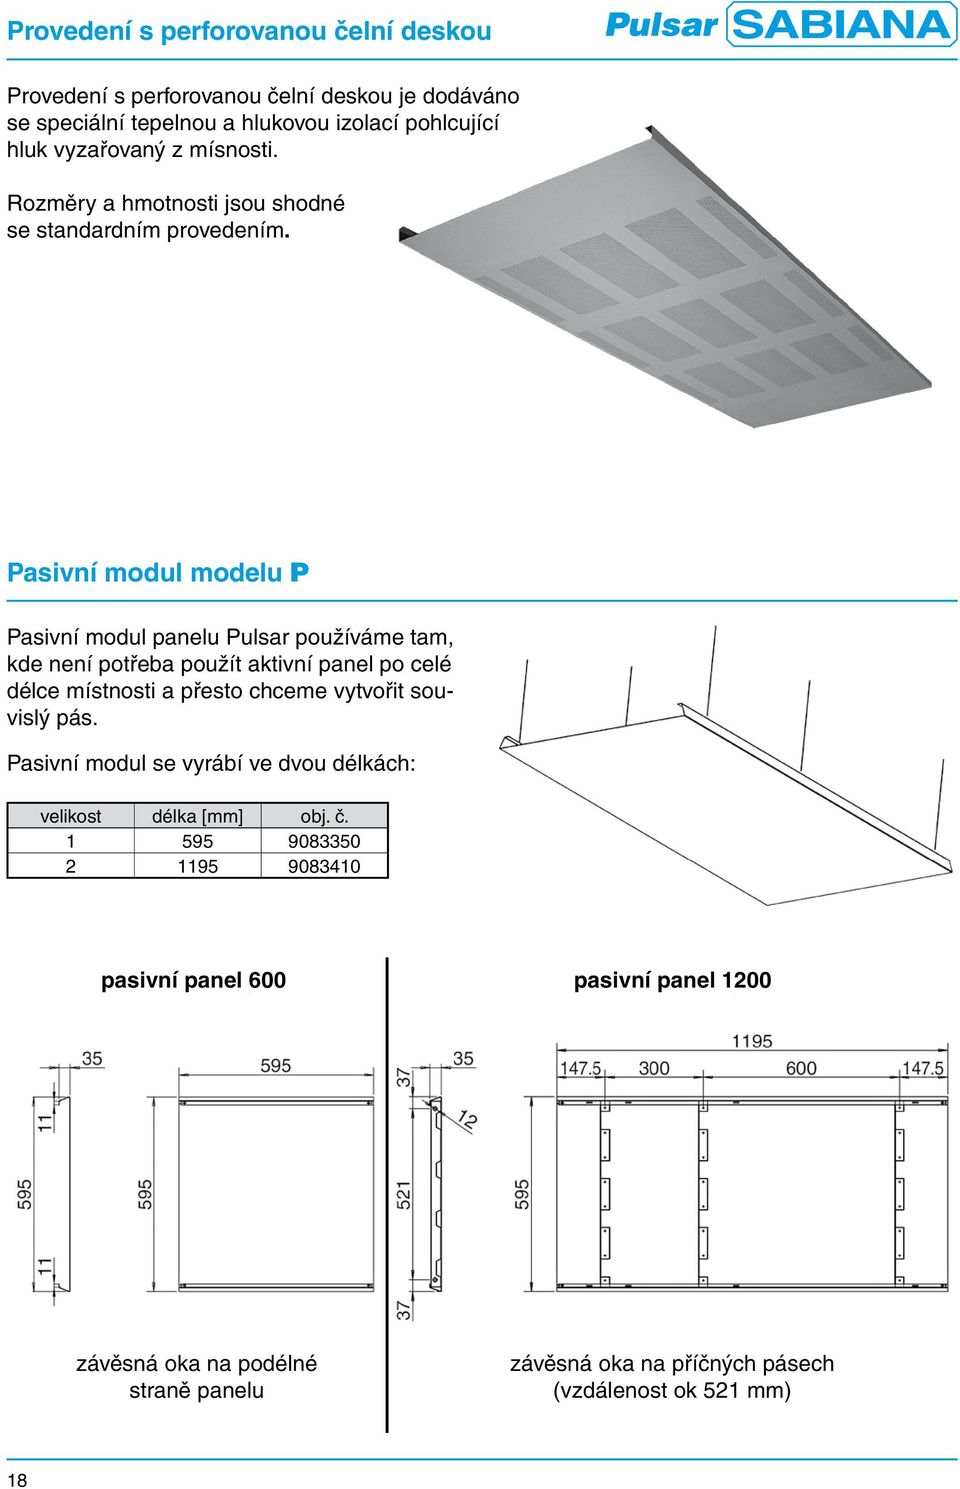 Pasivní modul modelu P Pasivní modul panelu používáme tam, kde není potřeba použít aktivní panel po celé délce místnosti a přesto chceme vytvořit